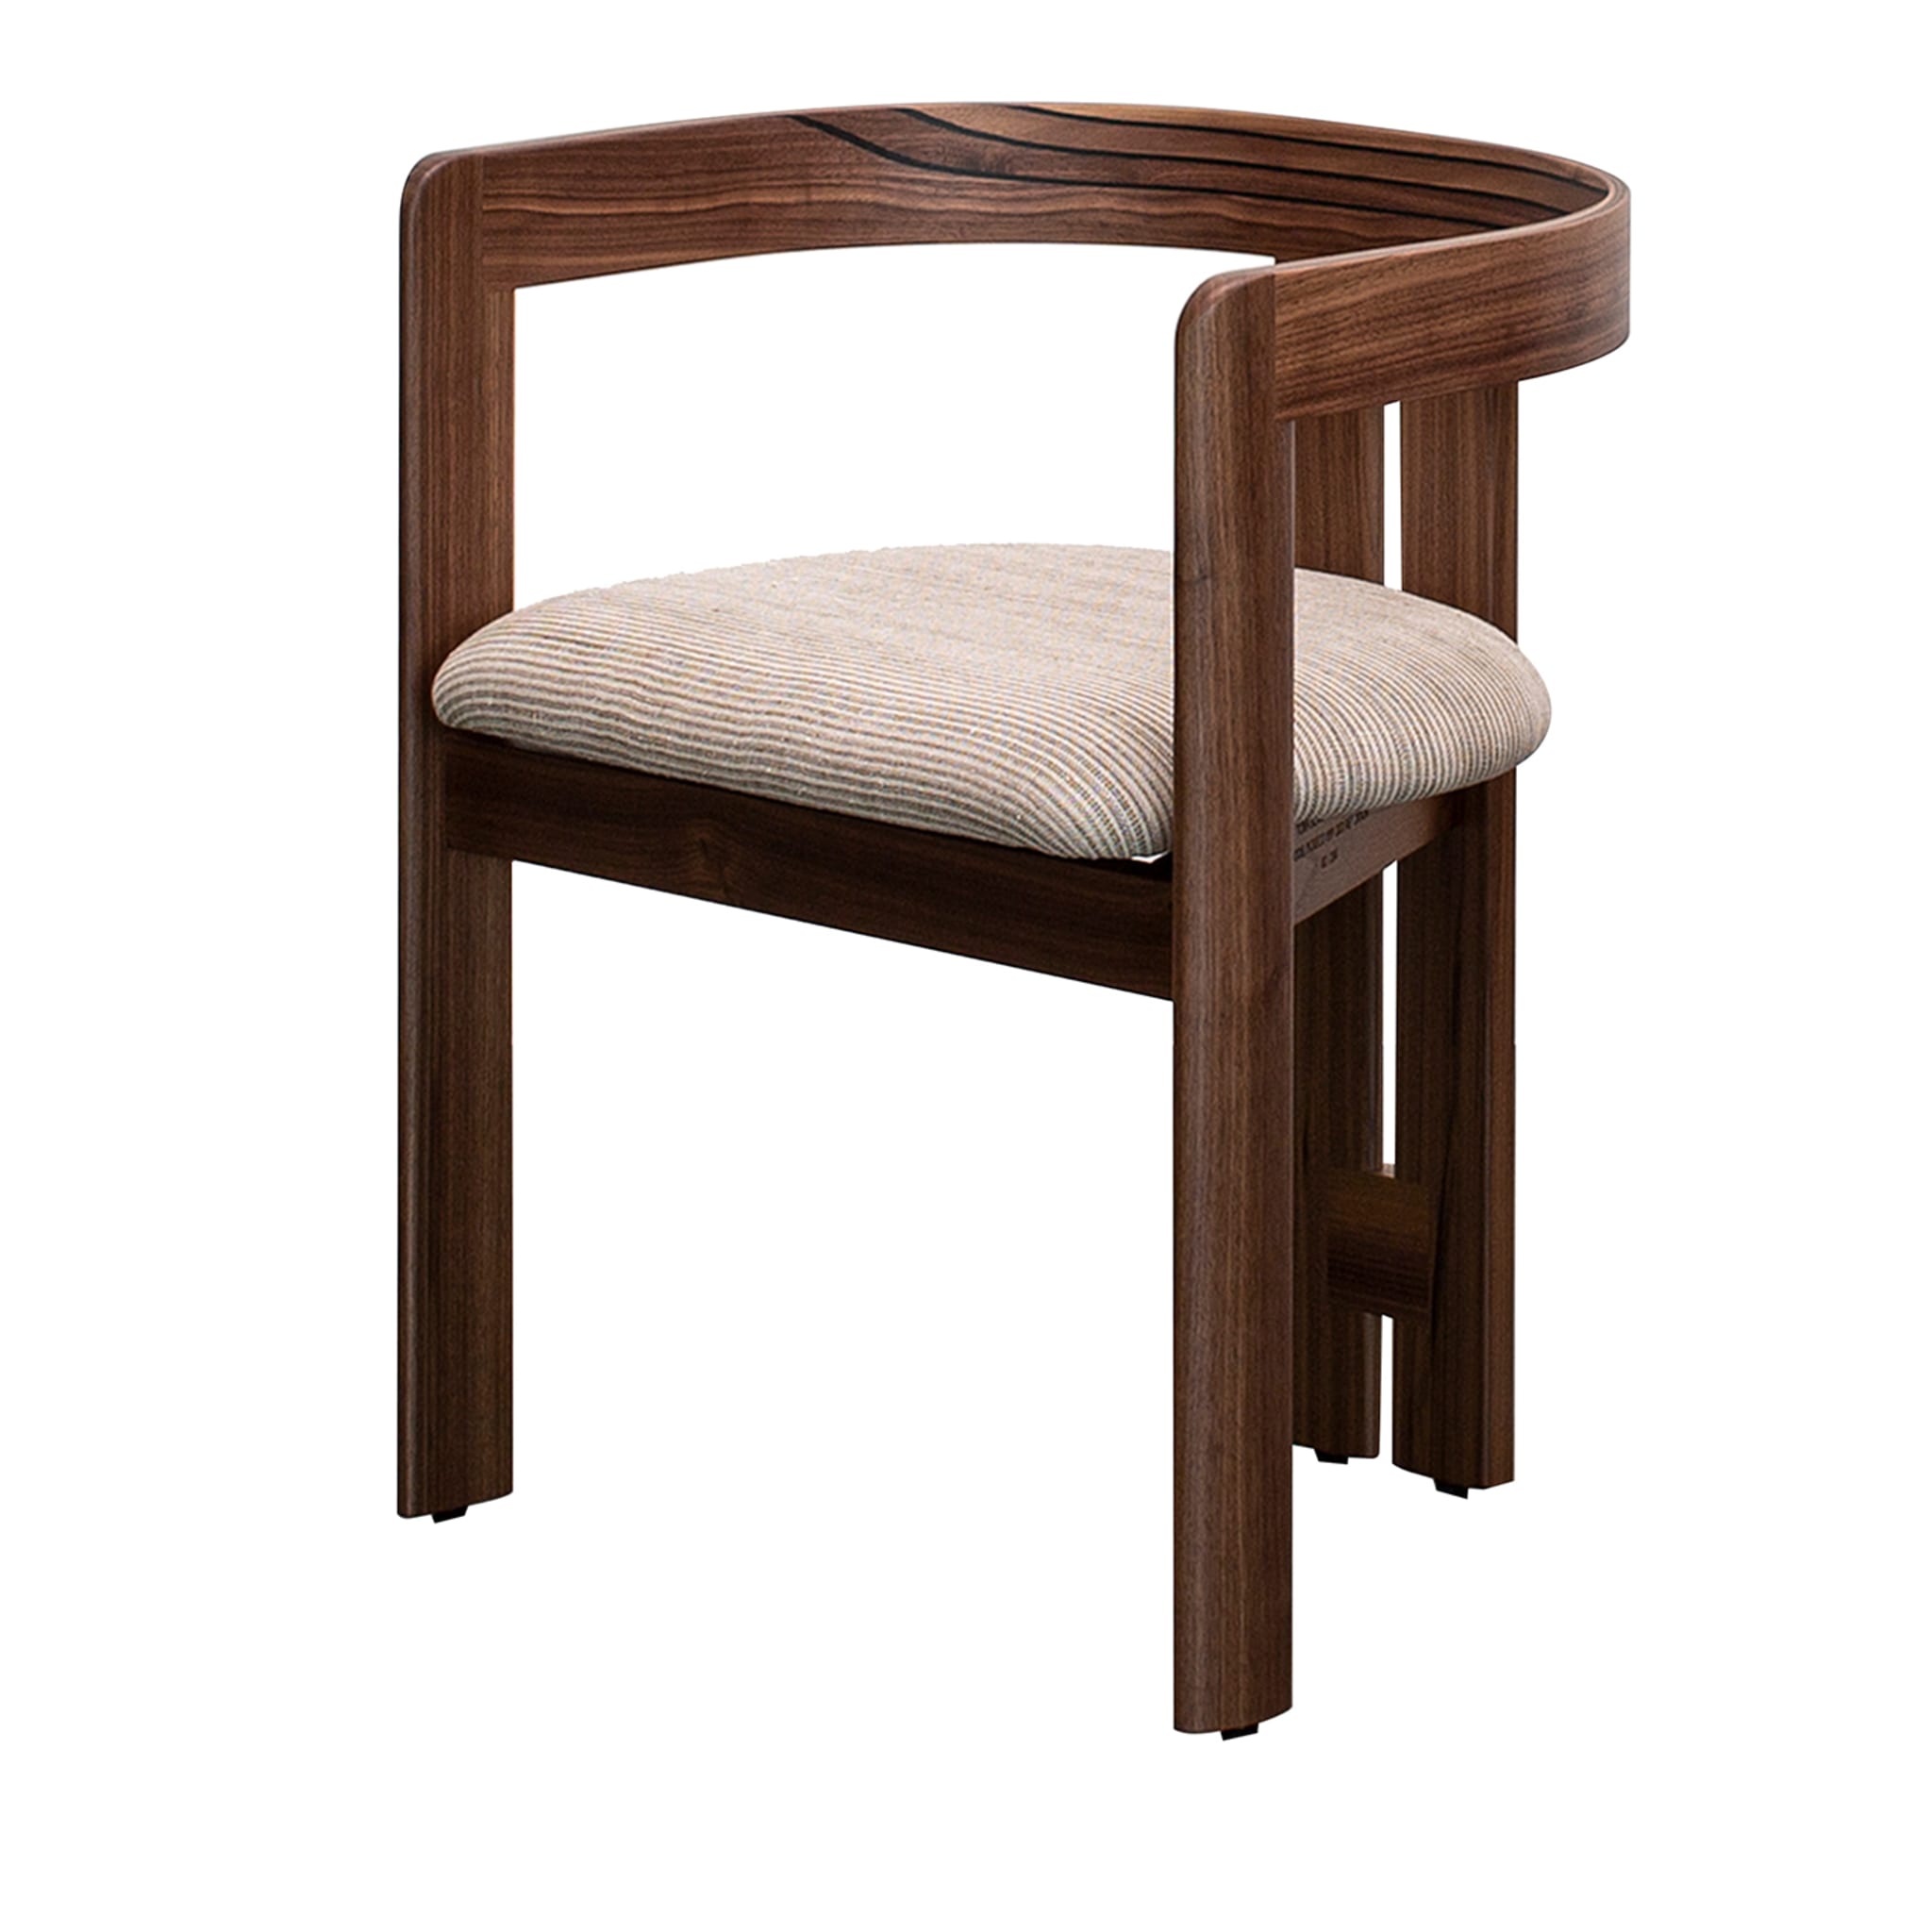 Pigreco Walnut Chair by Tobia Scarpa - Main view